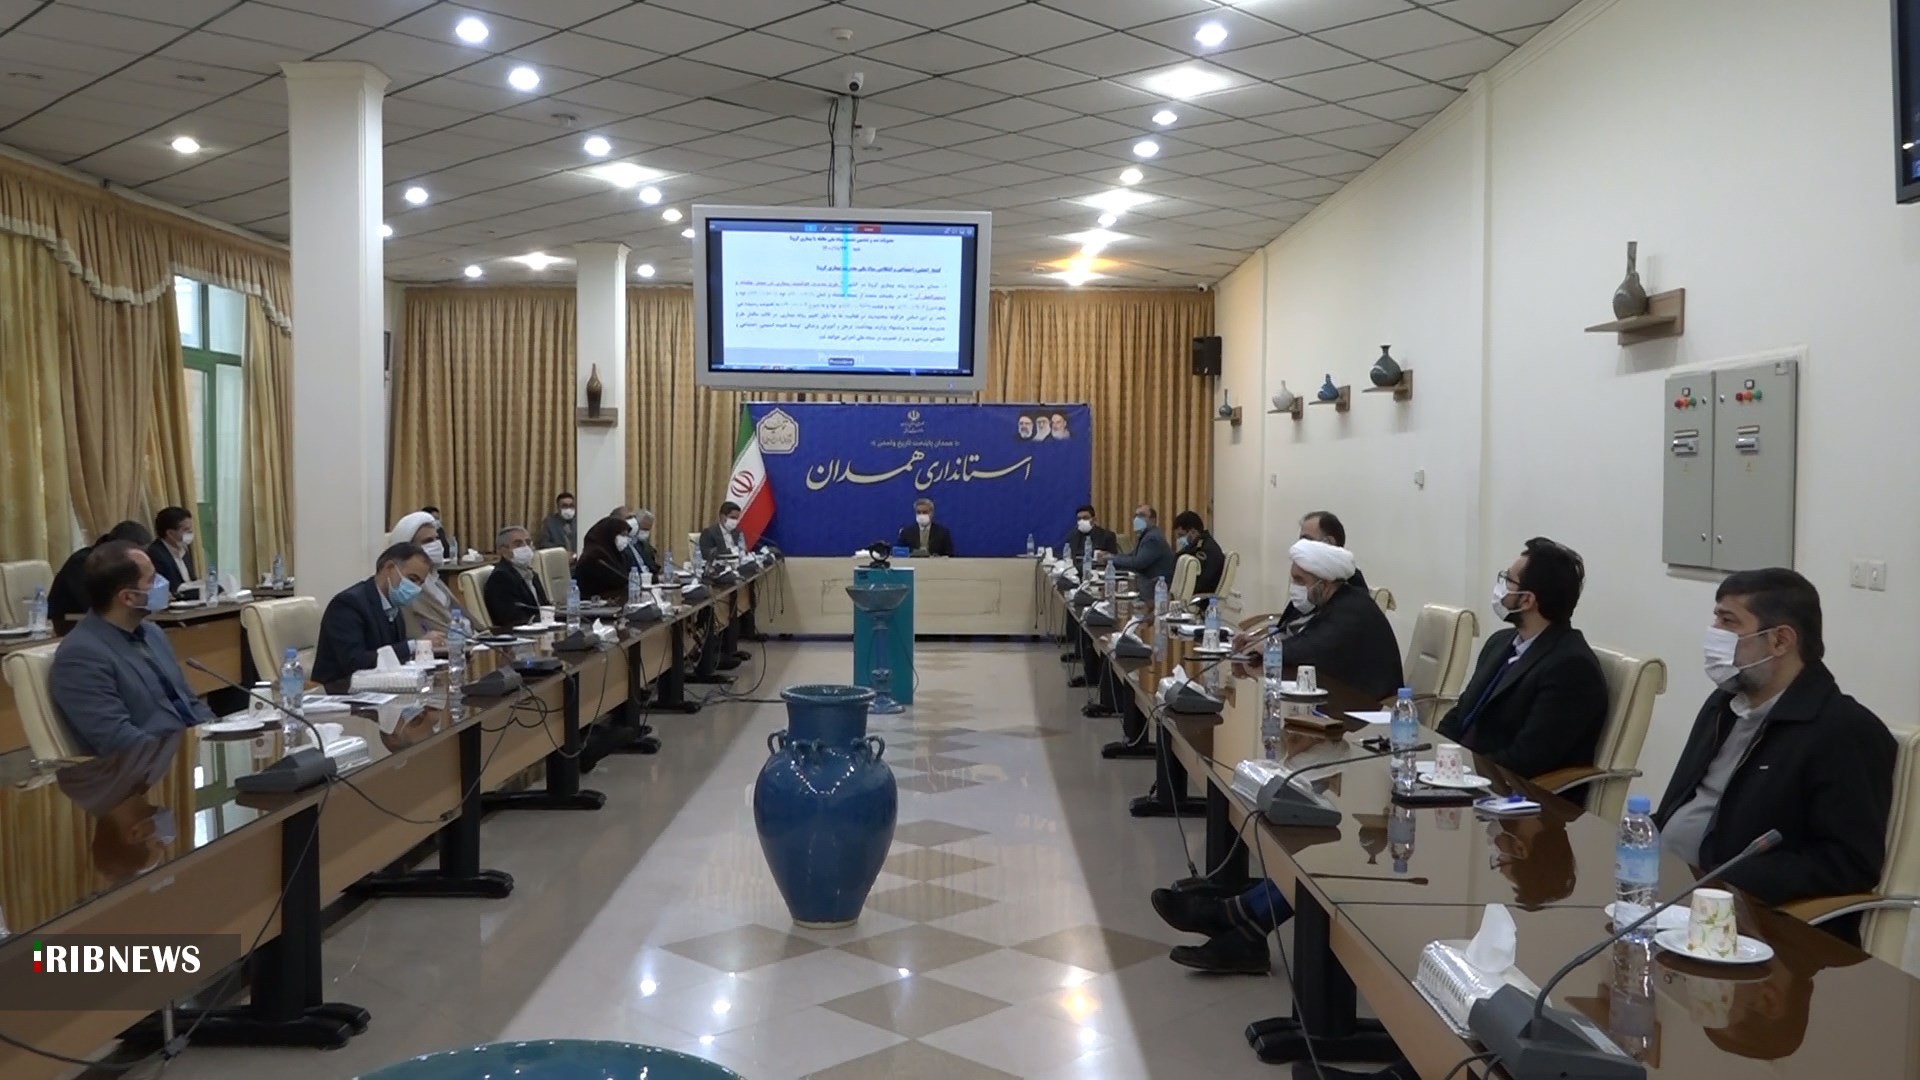 تمدید آموزش غیرحضوری در مدارس استان همدان تا یک هفته دیگر